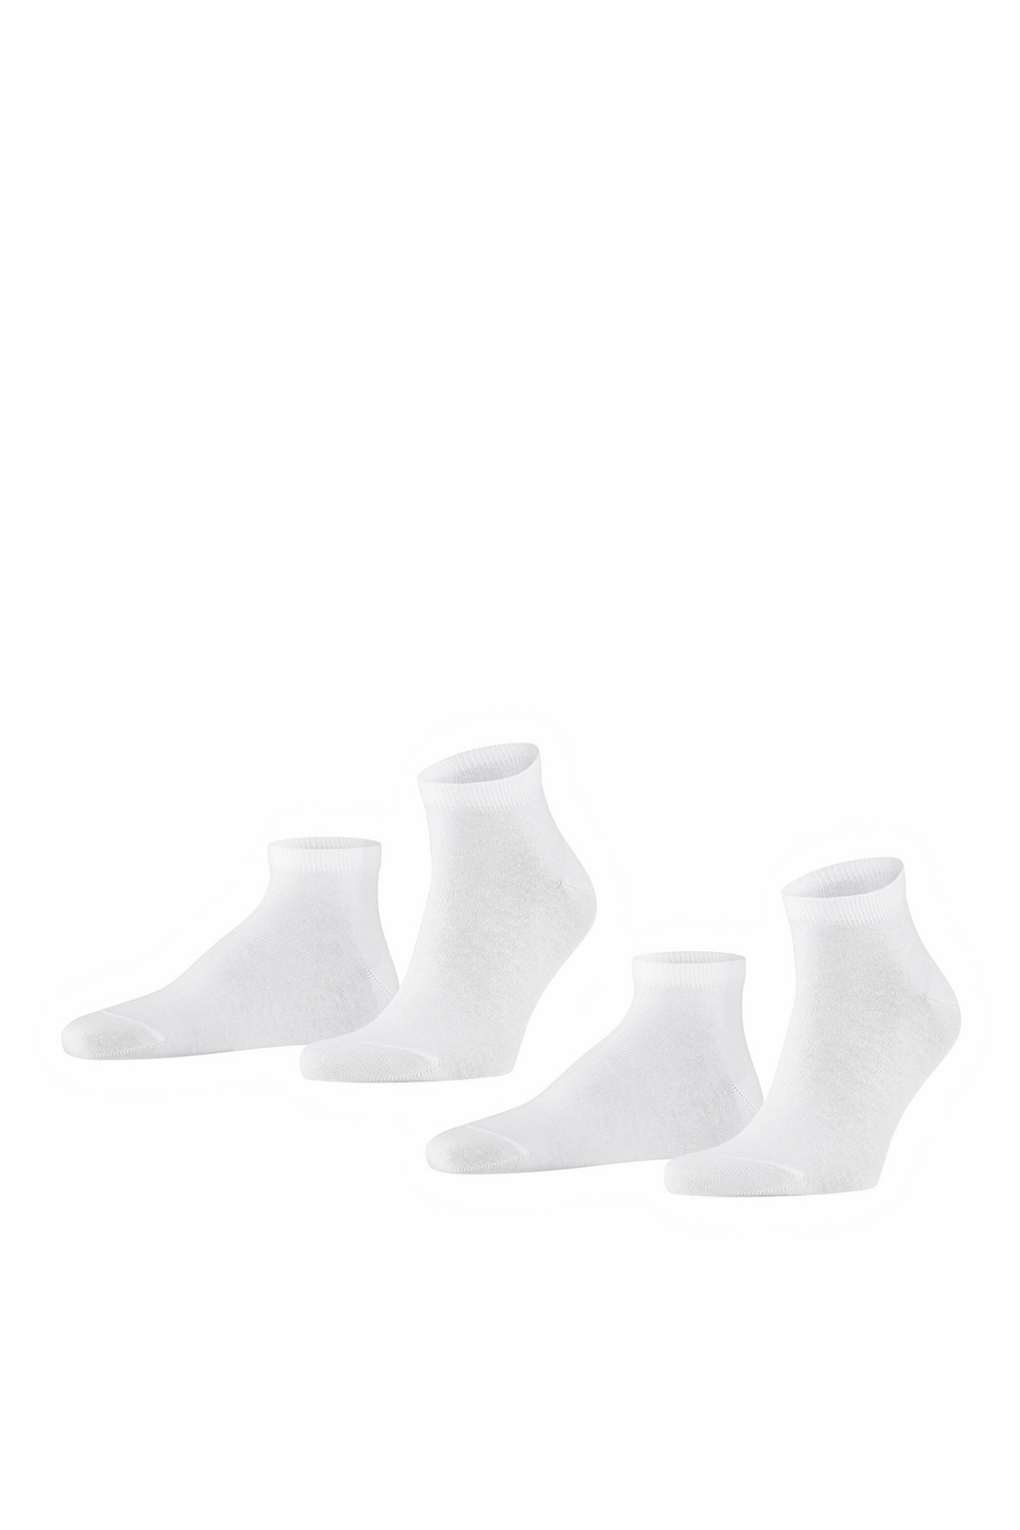 Комплект носков мужских FALKE 14606 белых 39-42